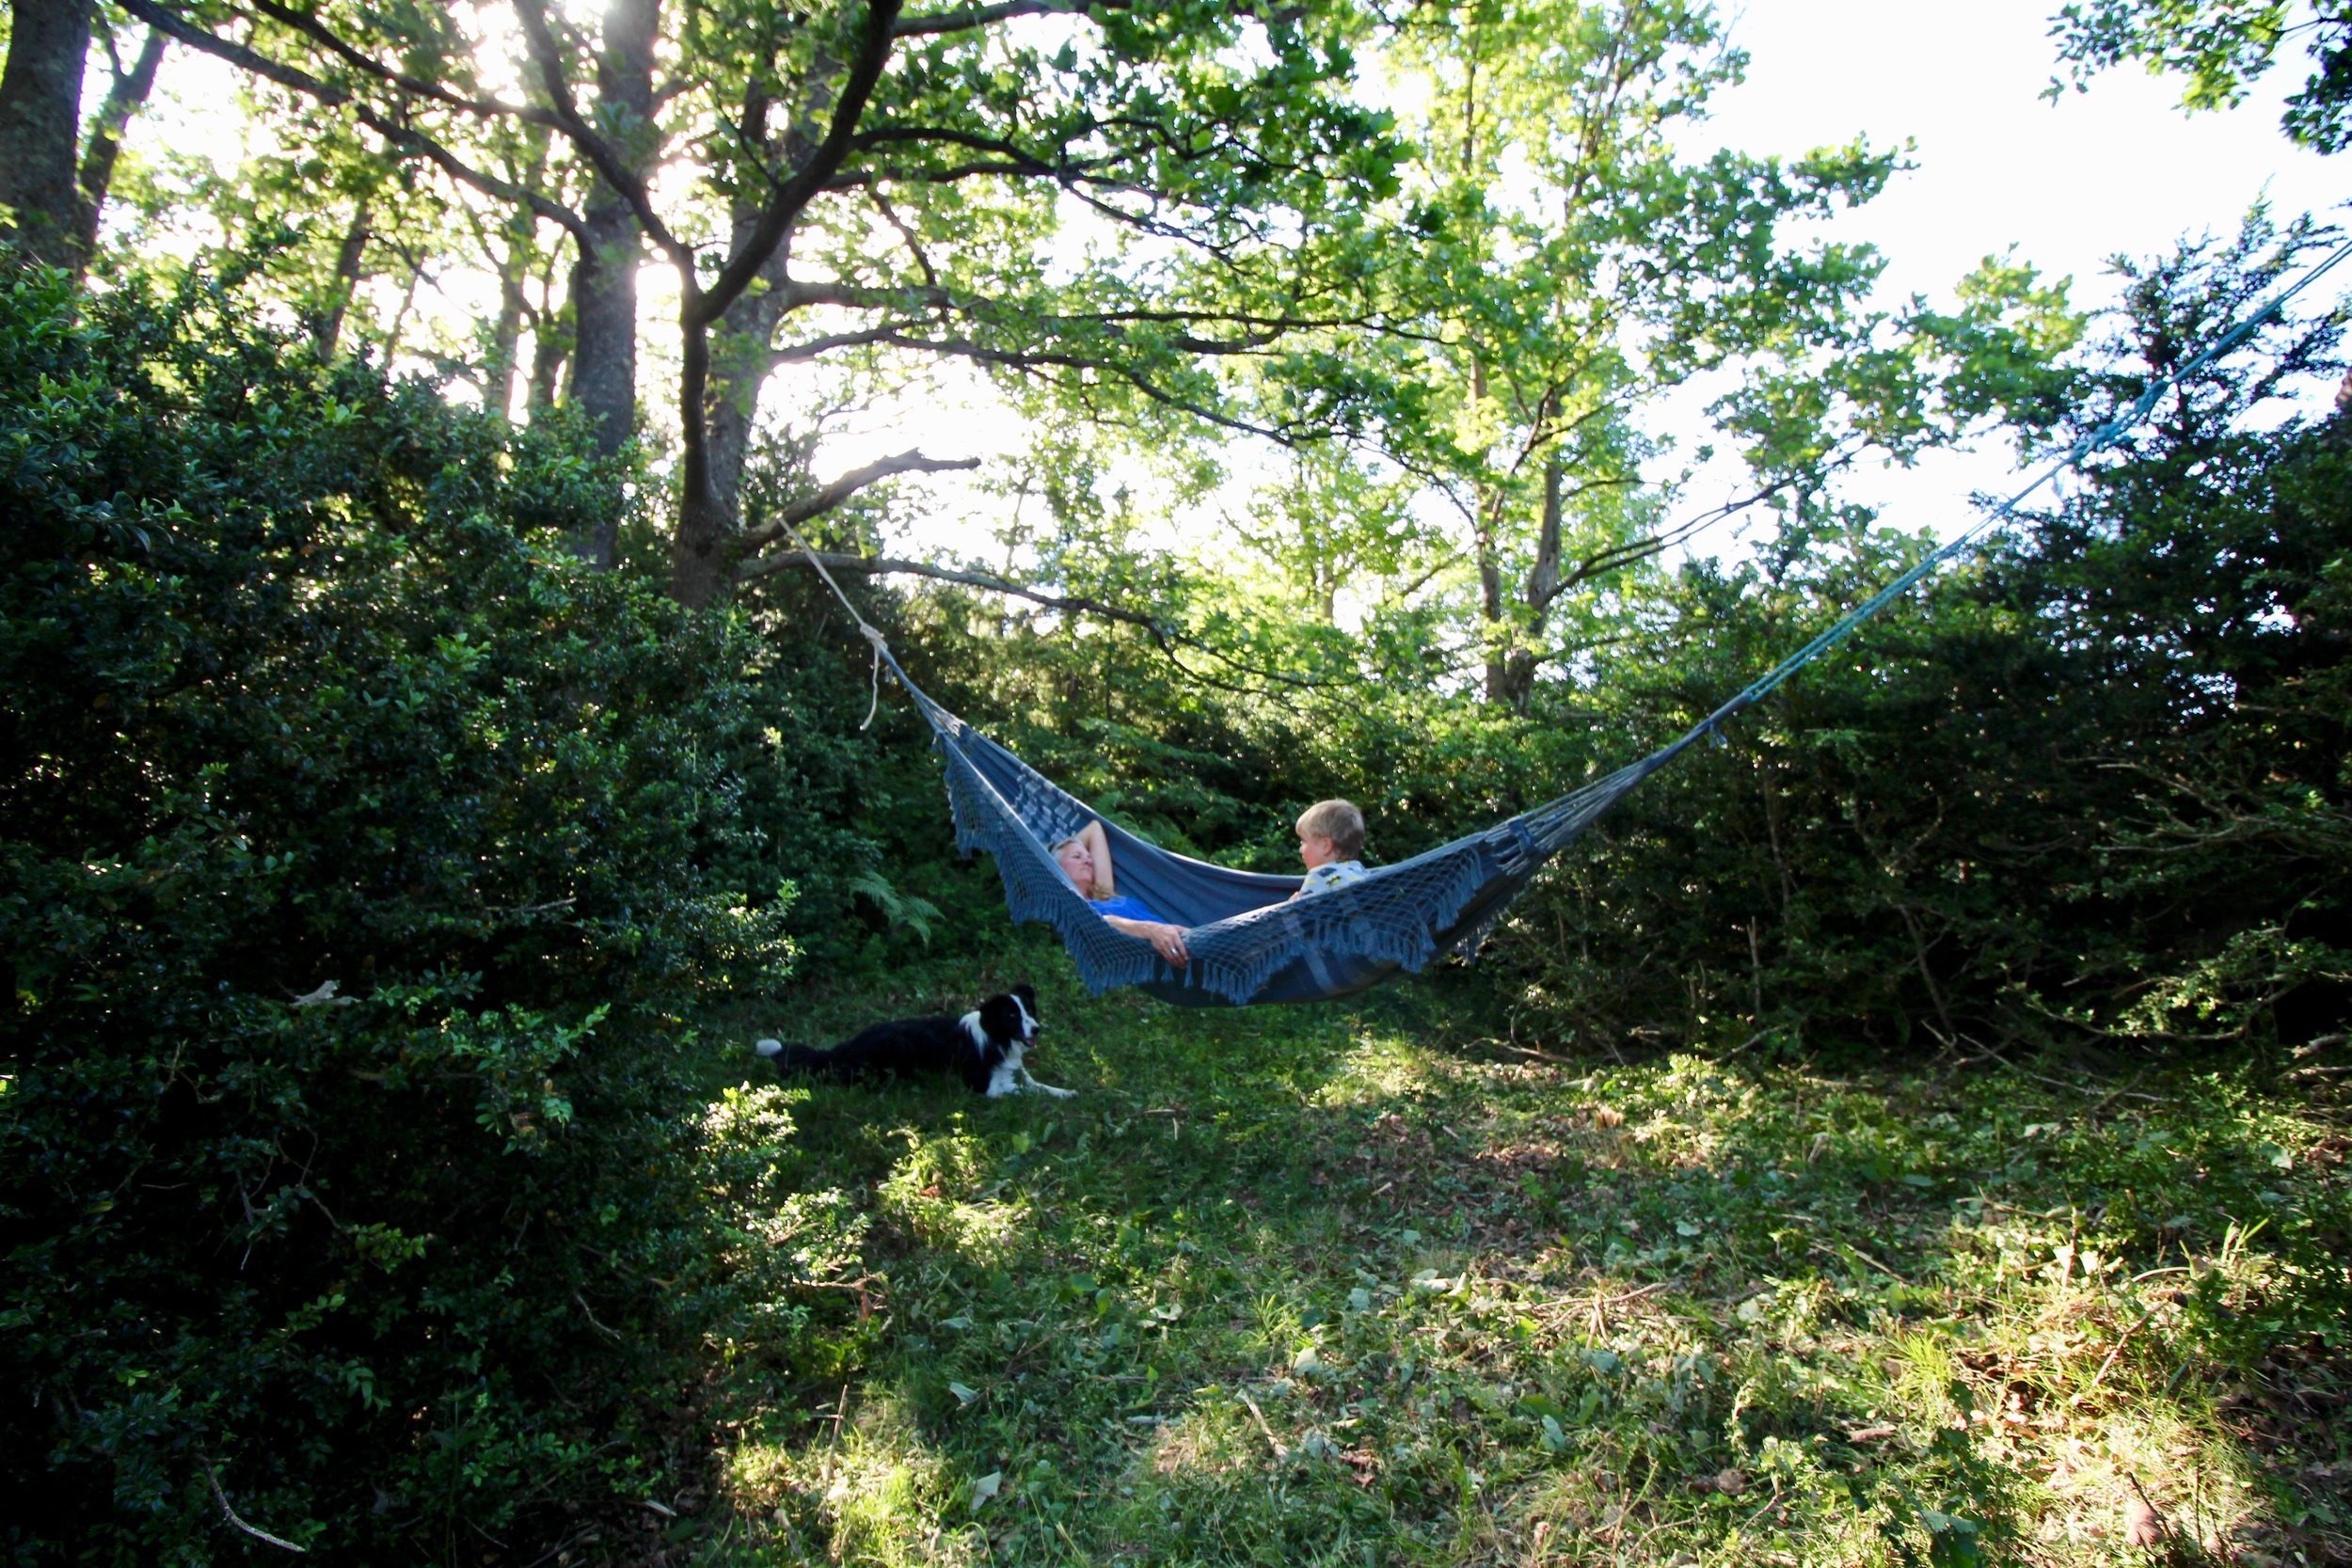 Secluded hammock spot